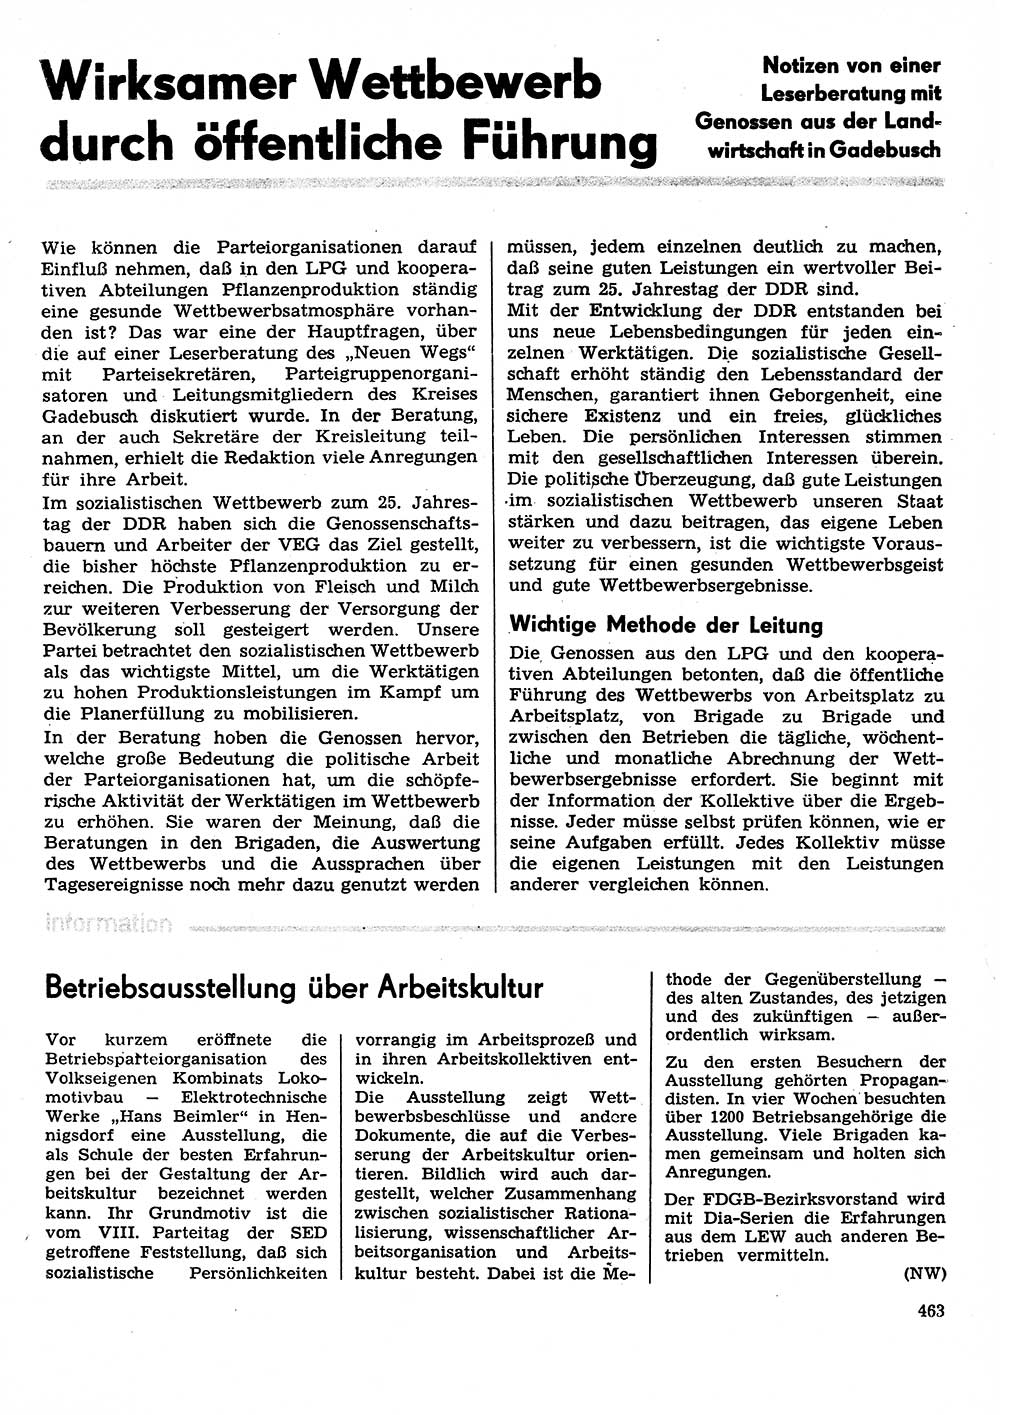 Neuer Weg (NW), Organ des Zentralkomitees (ZK) der SED (Sozialistische Einheitspartei Deutschlands) fÃ¼r Fragen des Parteilebens, 29. Jahrgang [Deutsche Demokratische Republik (DDR)] 1974, Seite 463 (NW ZK SED DDR 1974, S. 463)